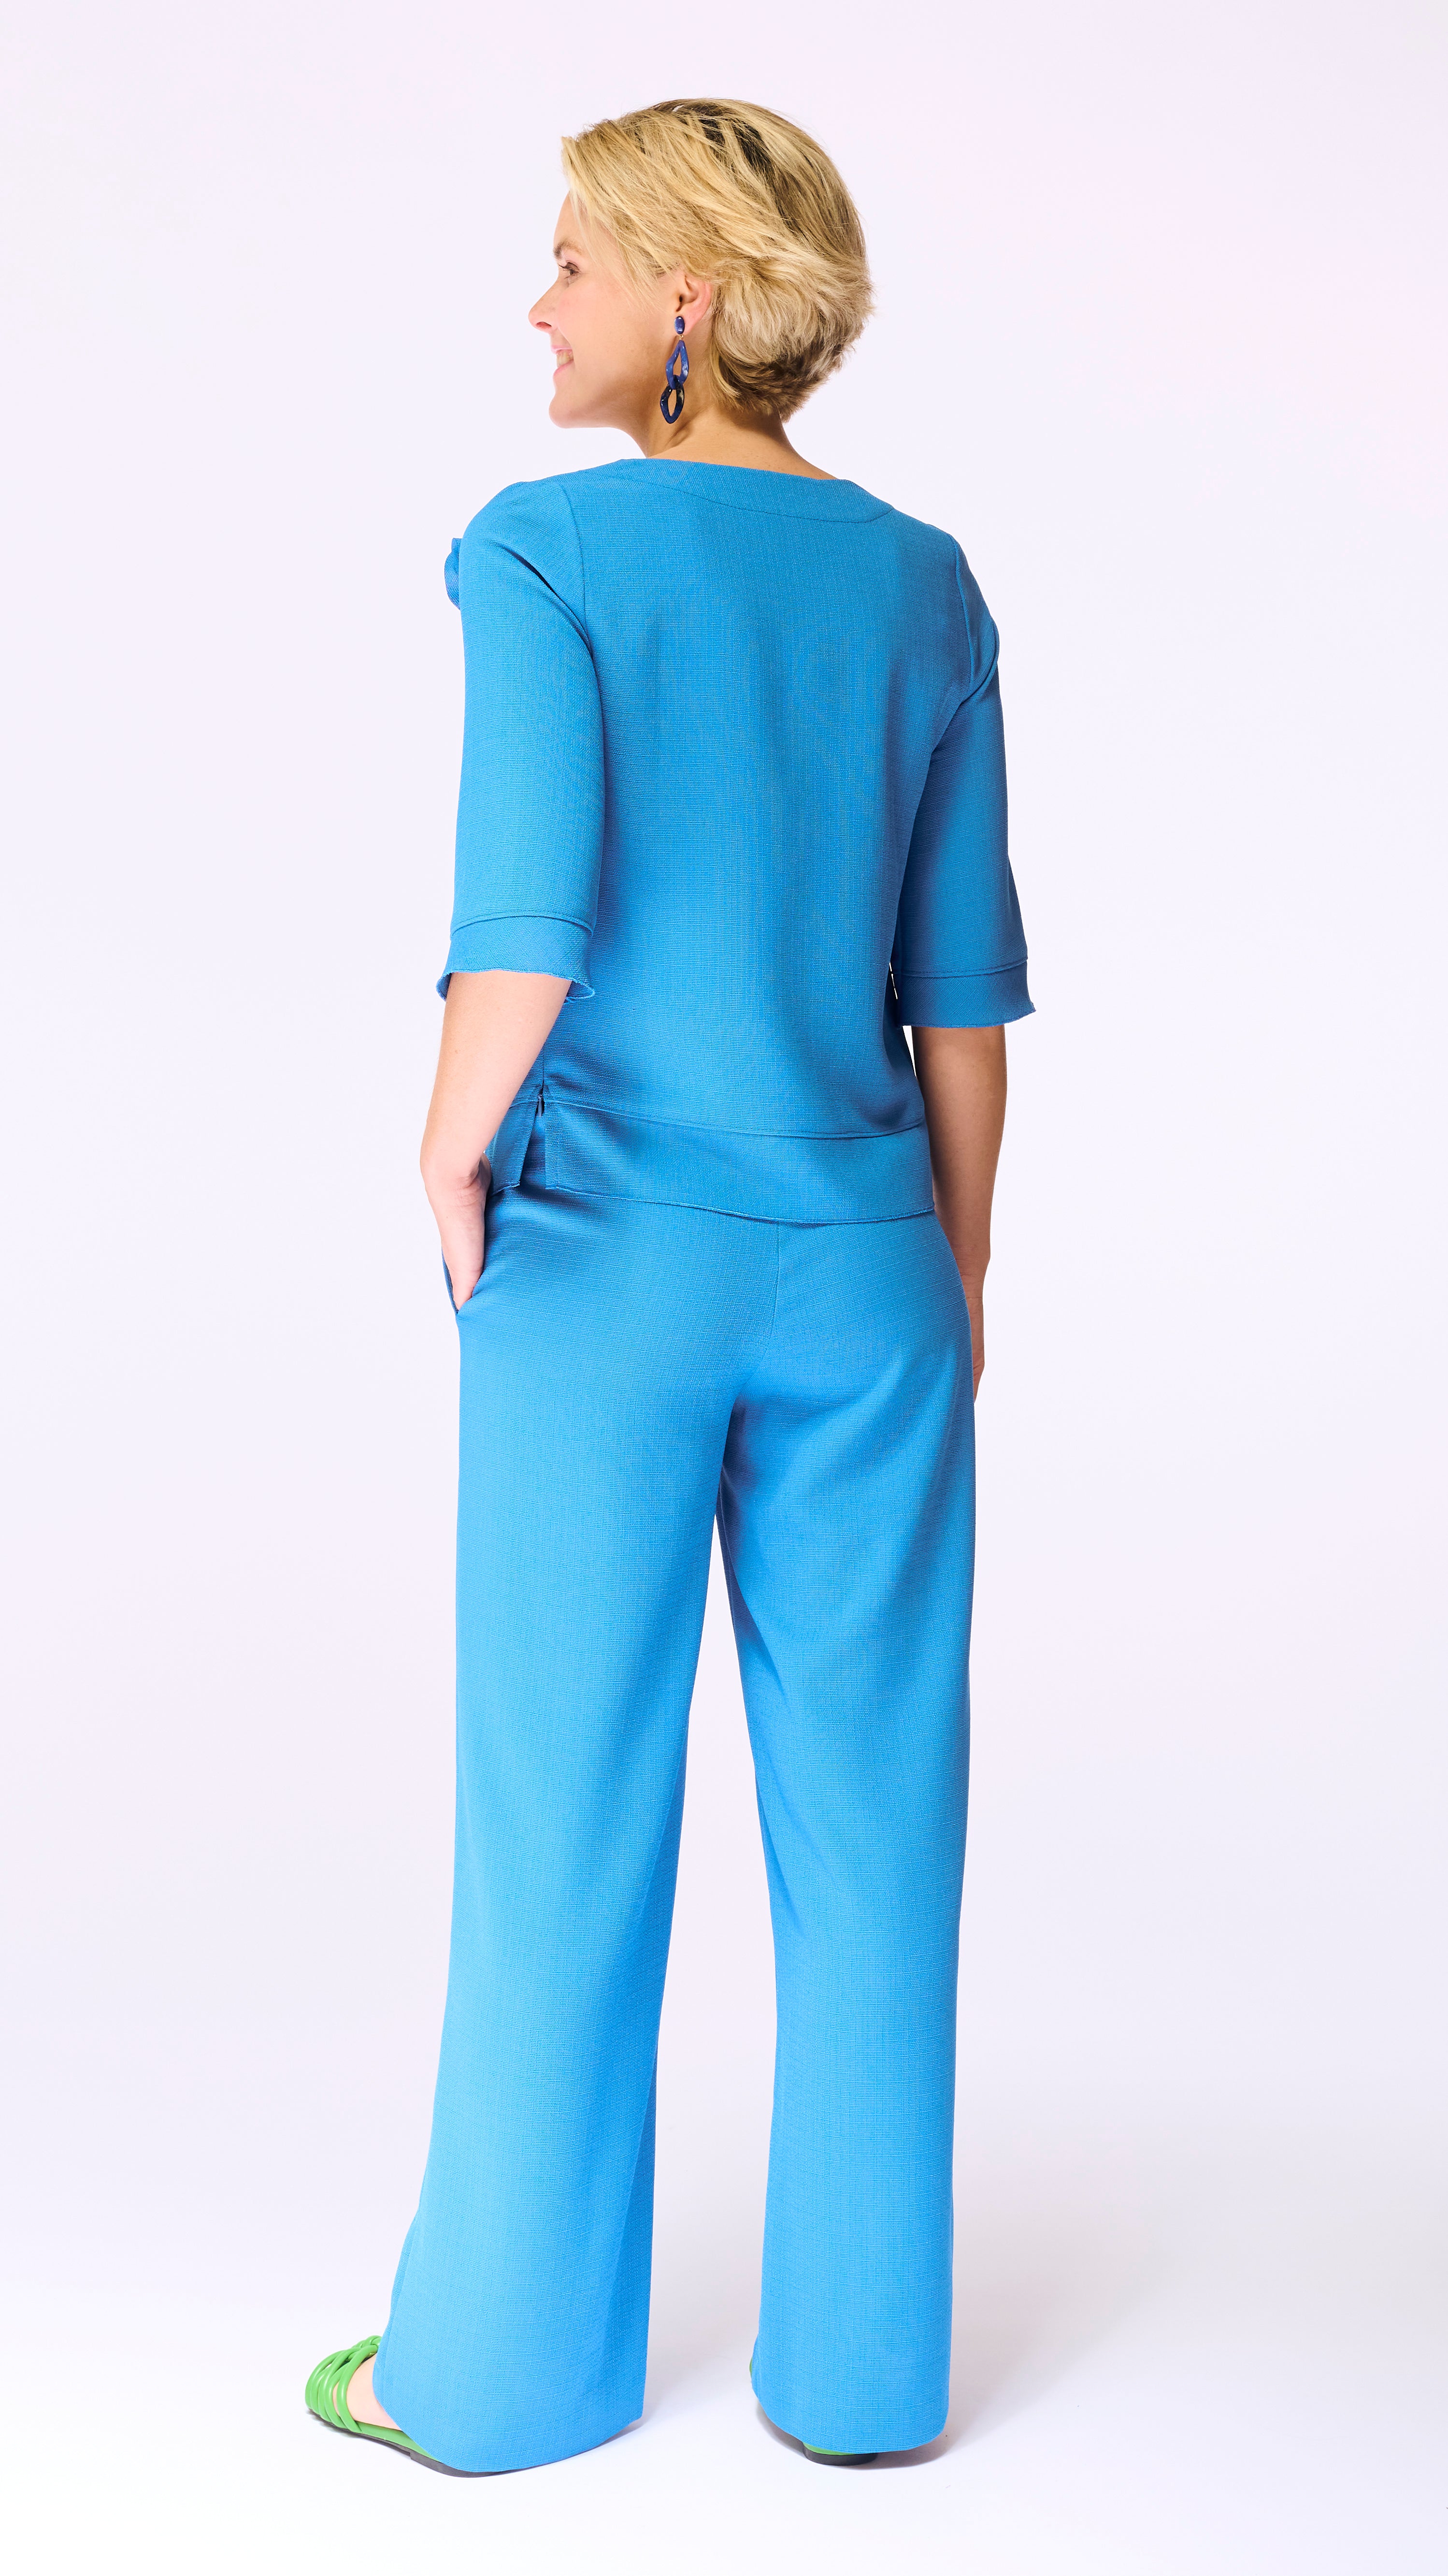 Pantalon bleu Accent Fashion (Glance 18511/Ibizabl)